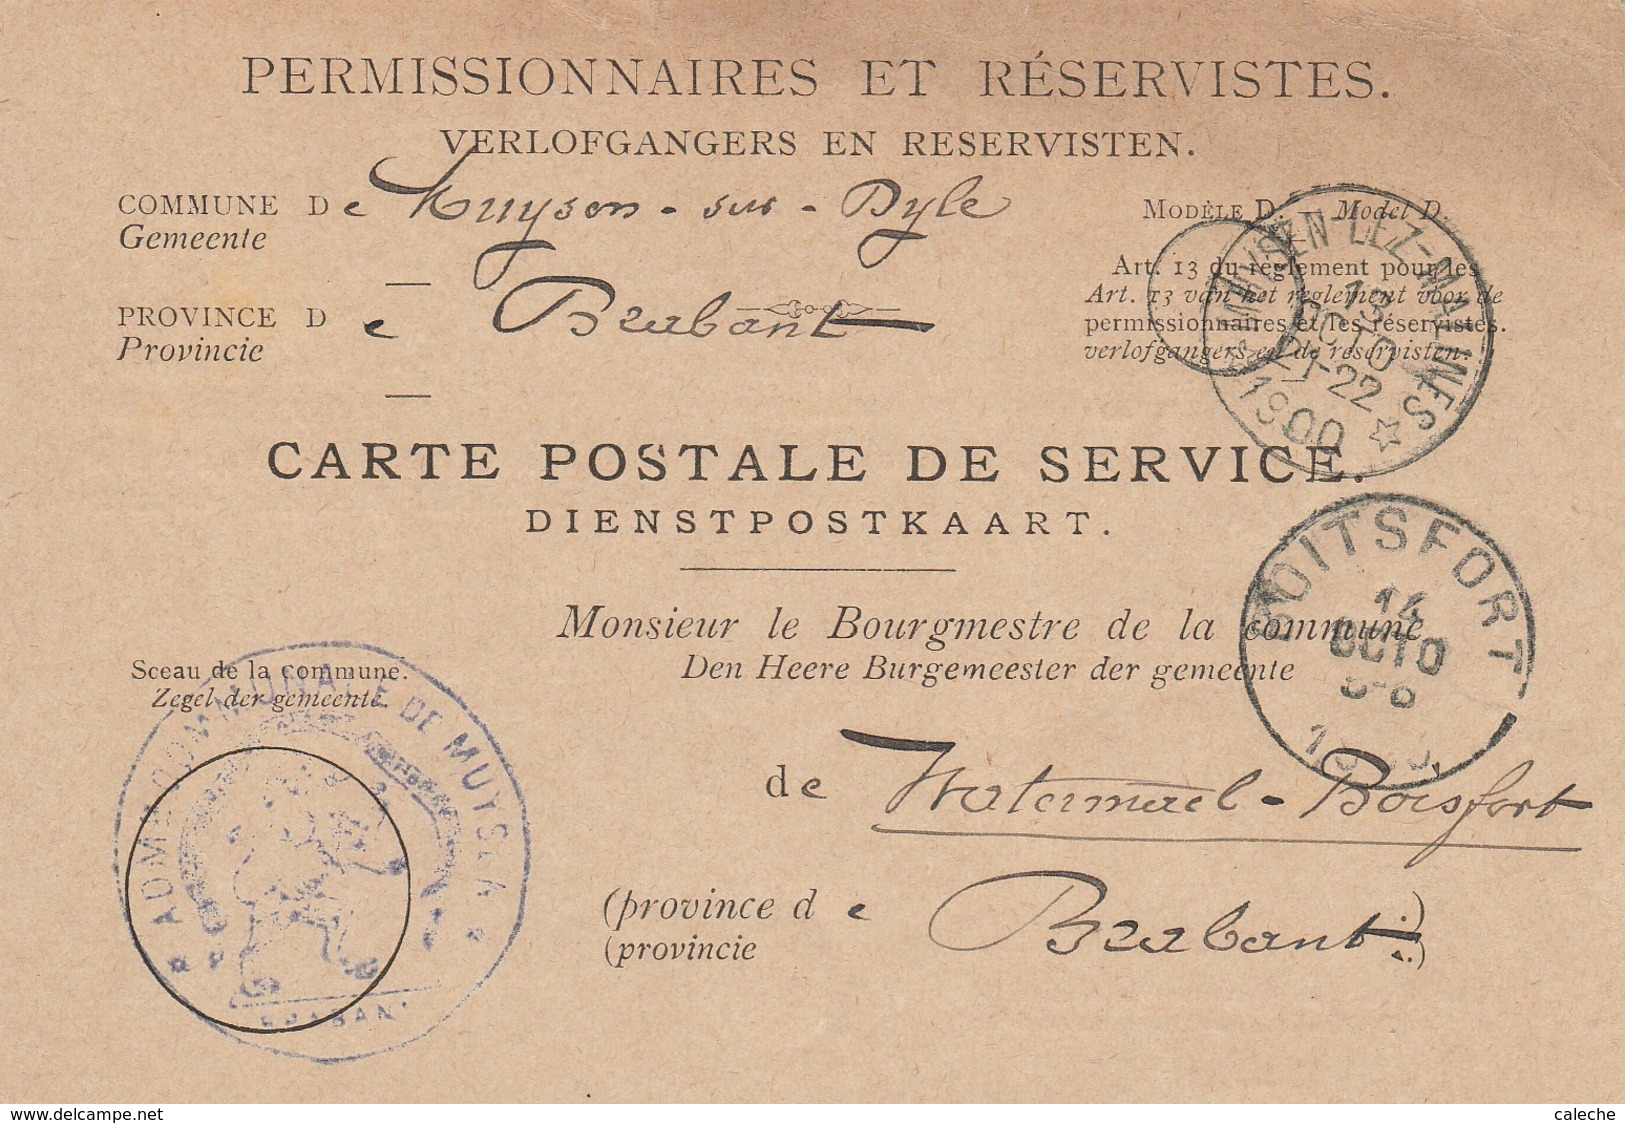 Carte Postale De Service Pour Permissionnaires Et Réservistes -armée -1900 - Relais Muysen-Lez-Malines - Postmarks With Stars